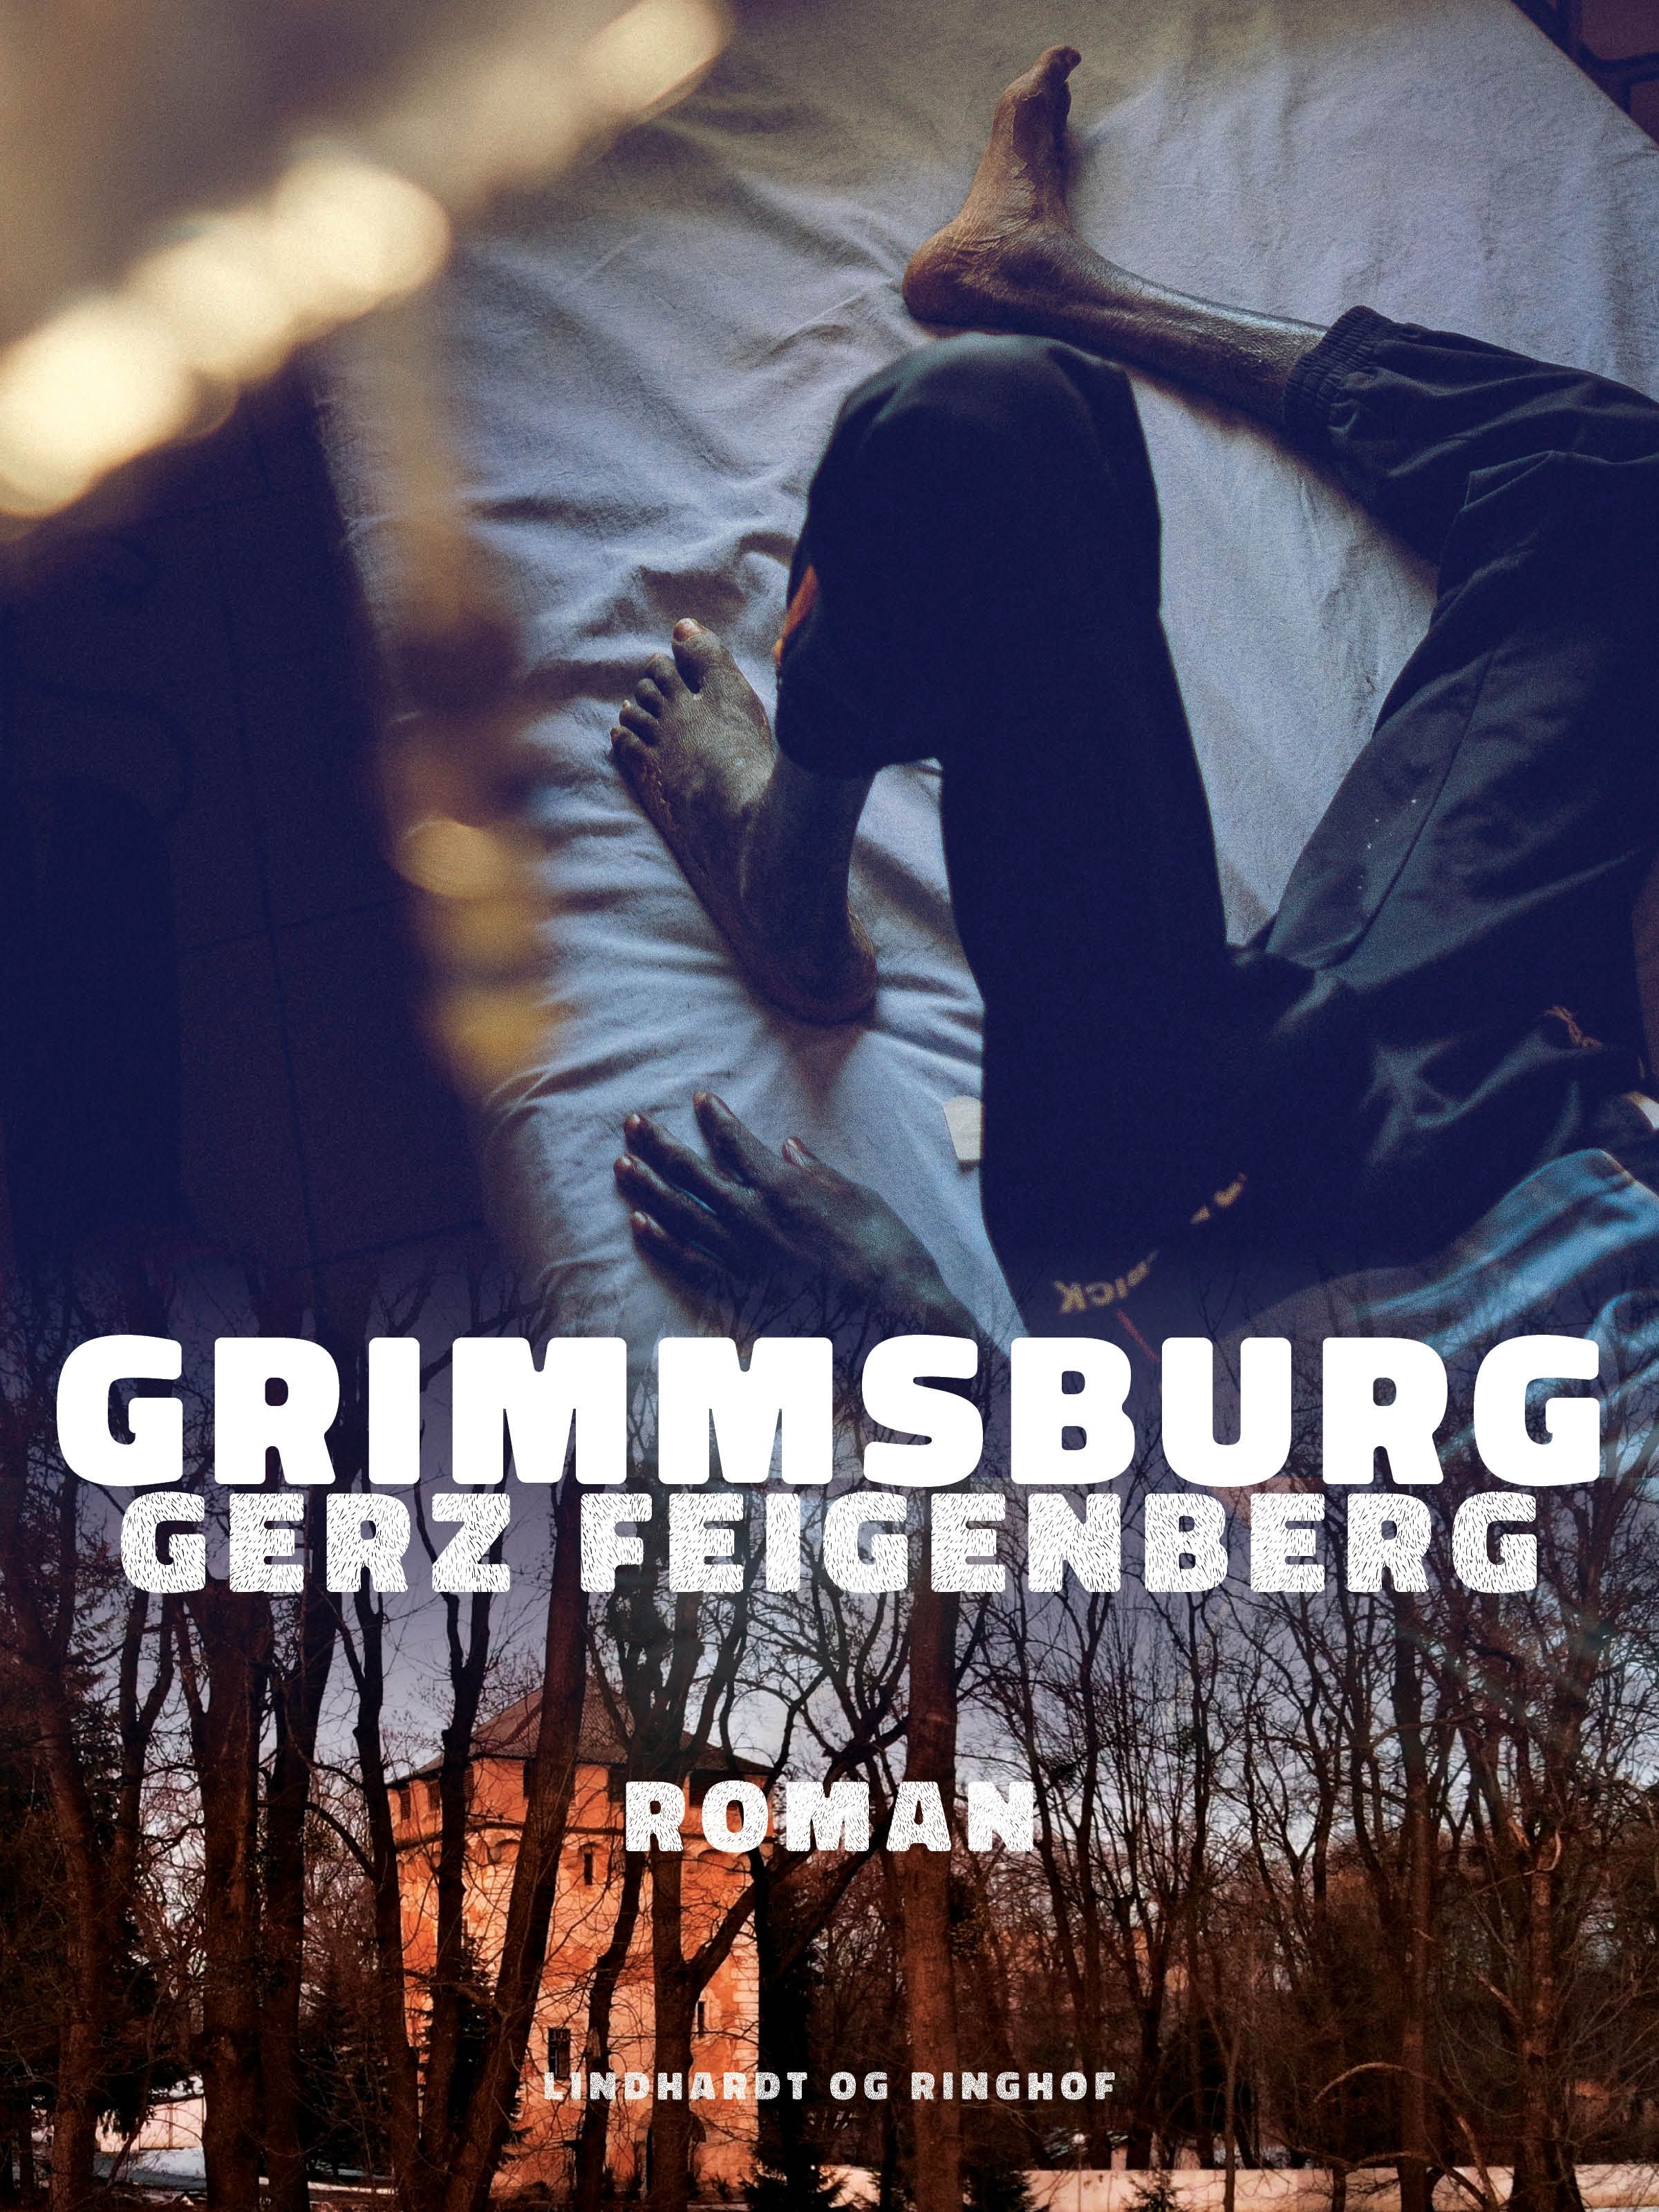 Grimmsburg, e-bok av Gerz Feigenberg